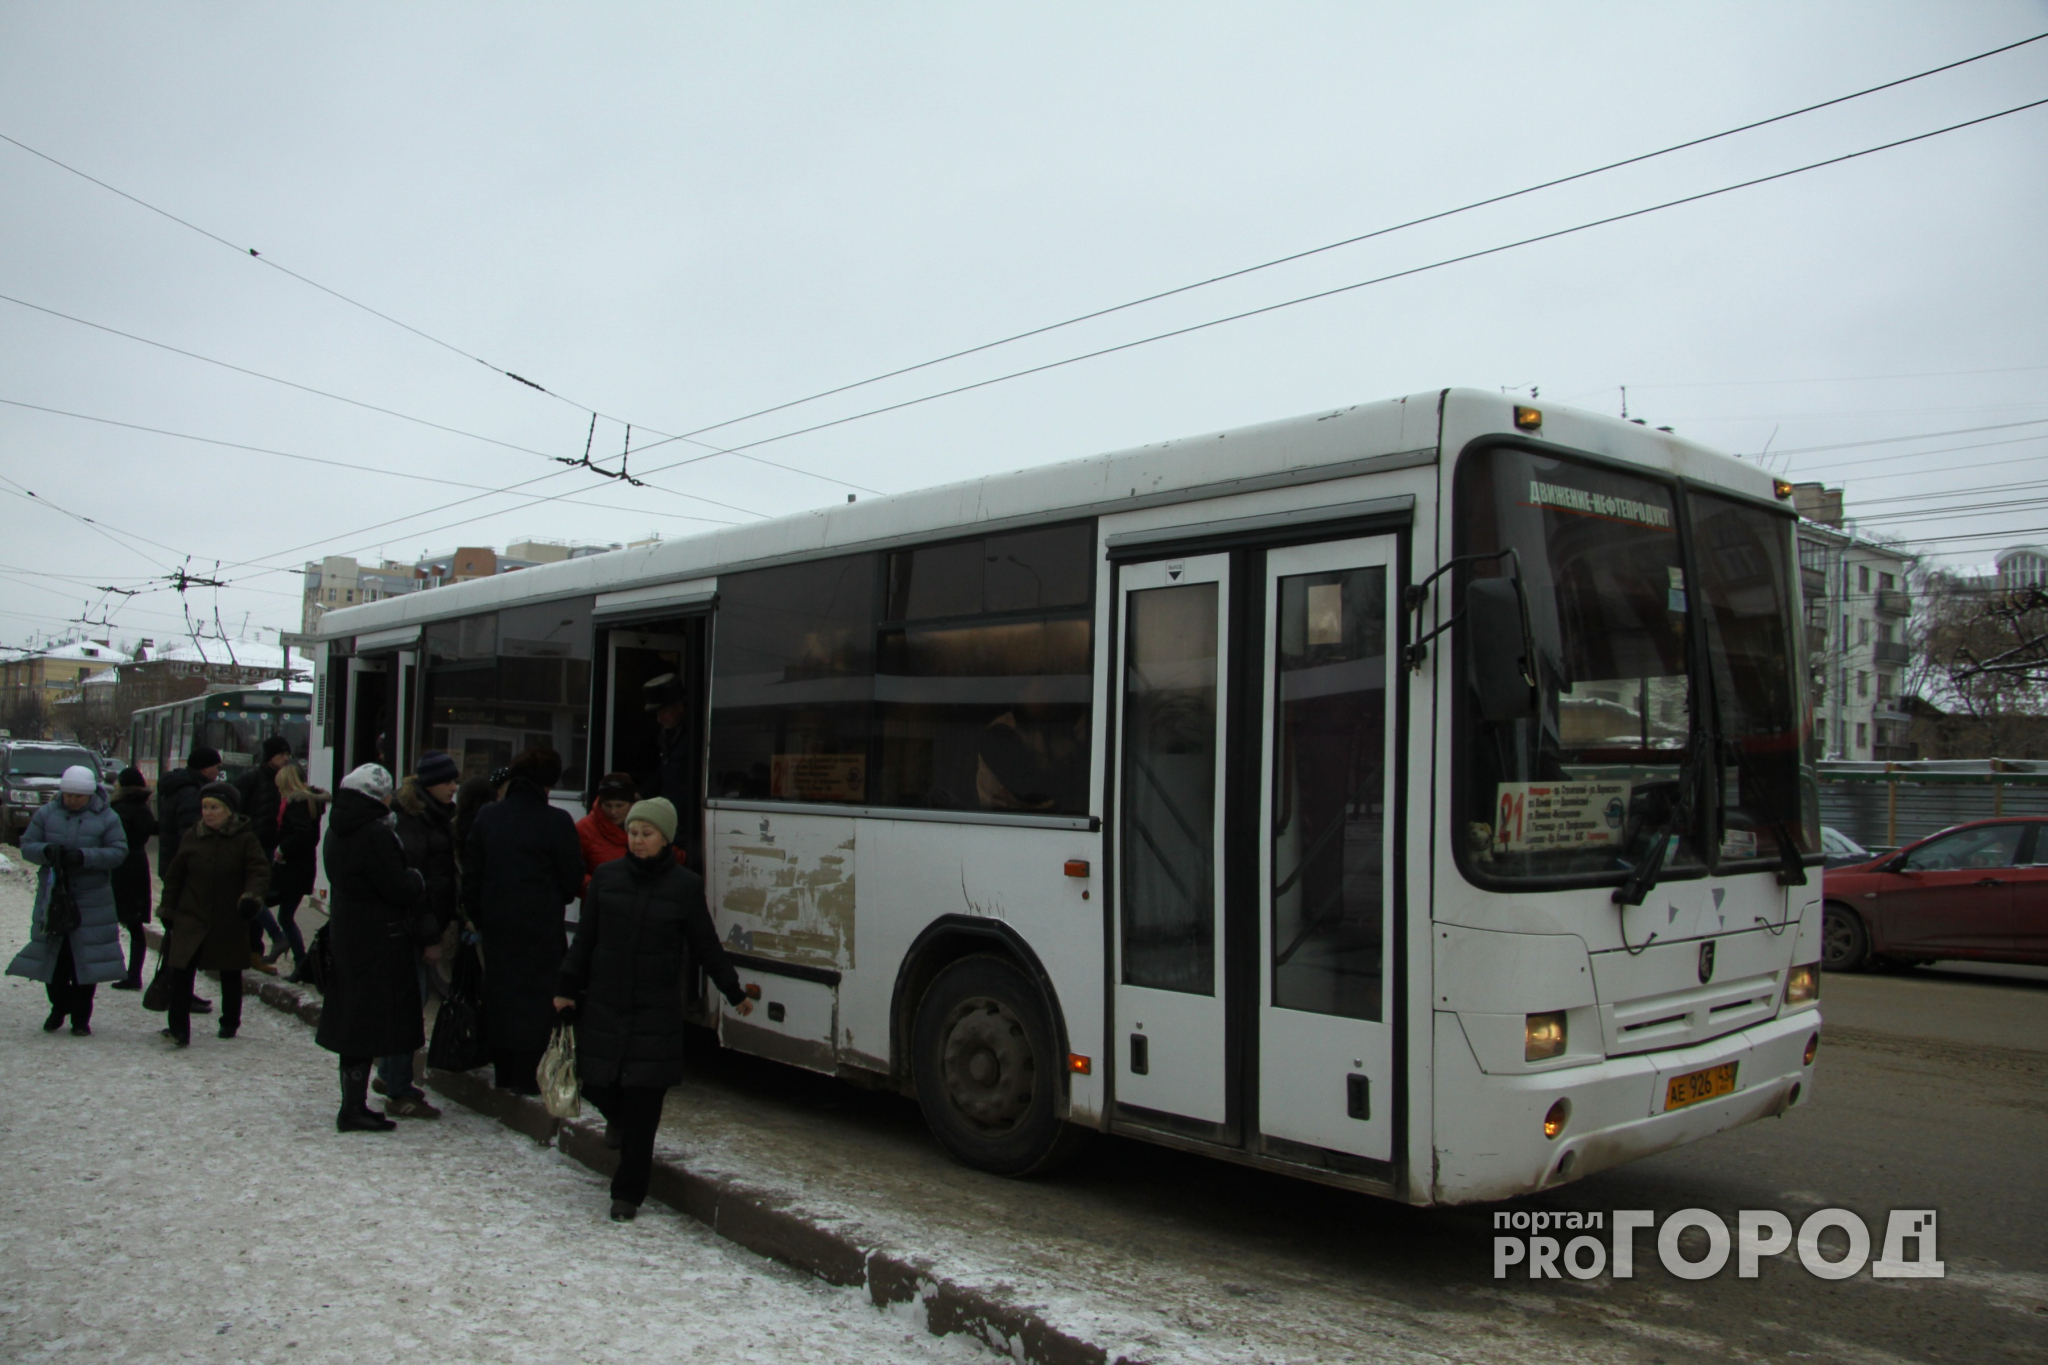 Стало известно, поднимется ли в Кирове плата за проезд в общественном транспорте